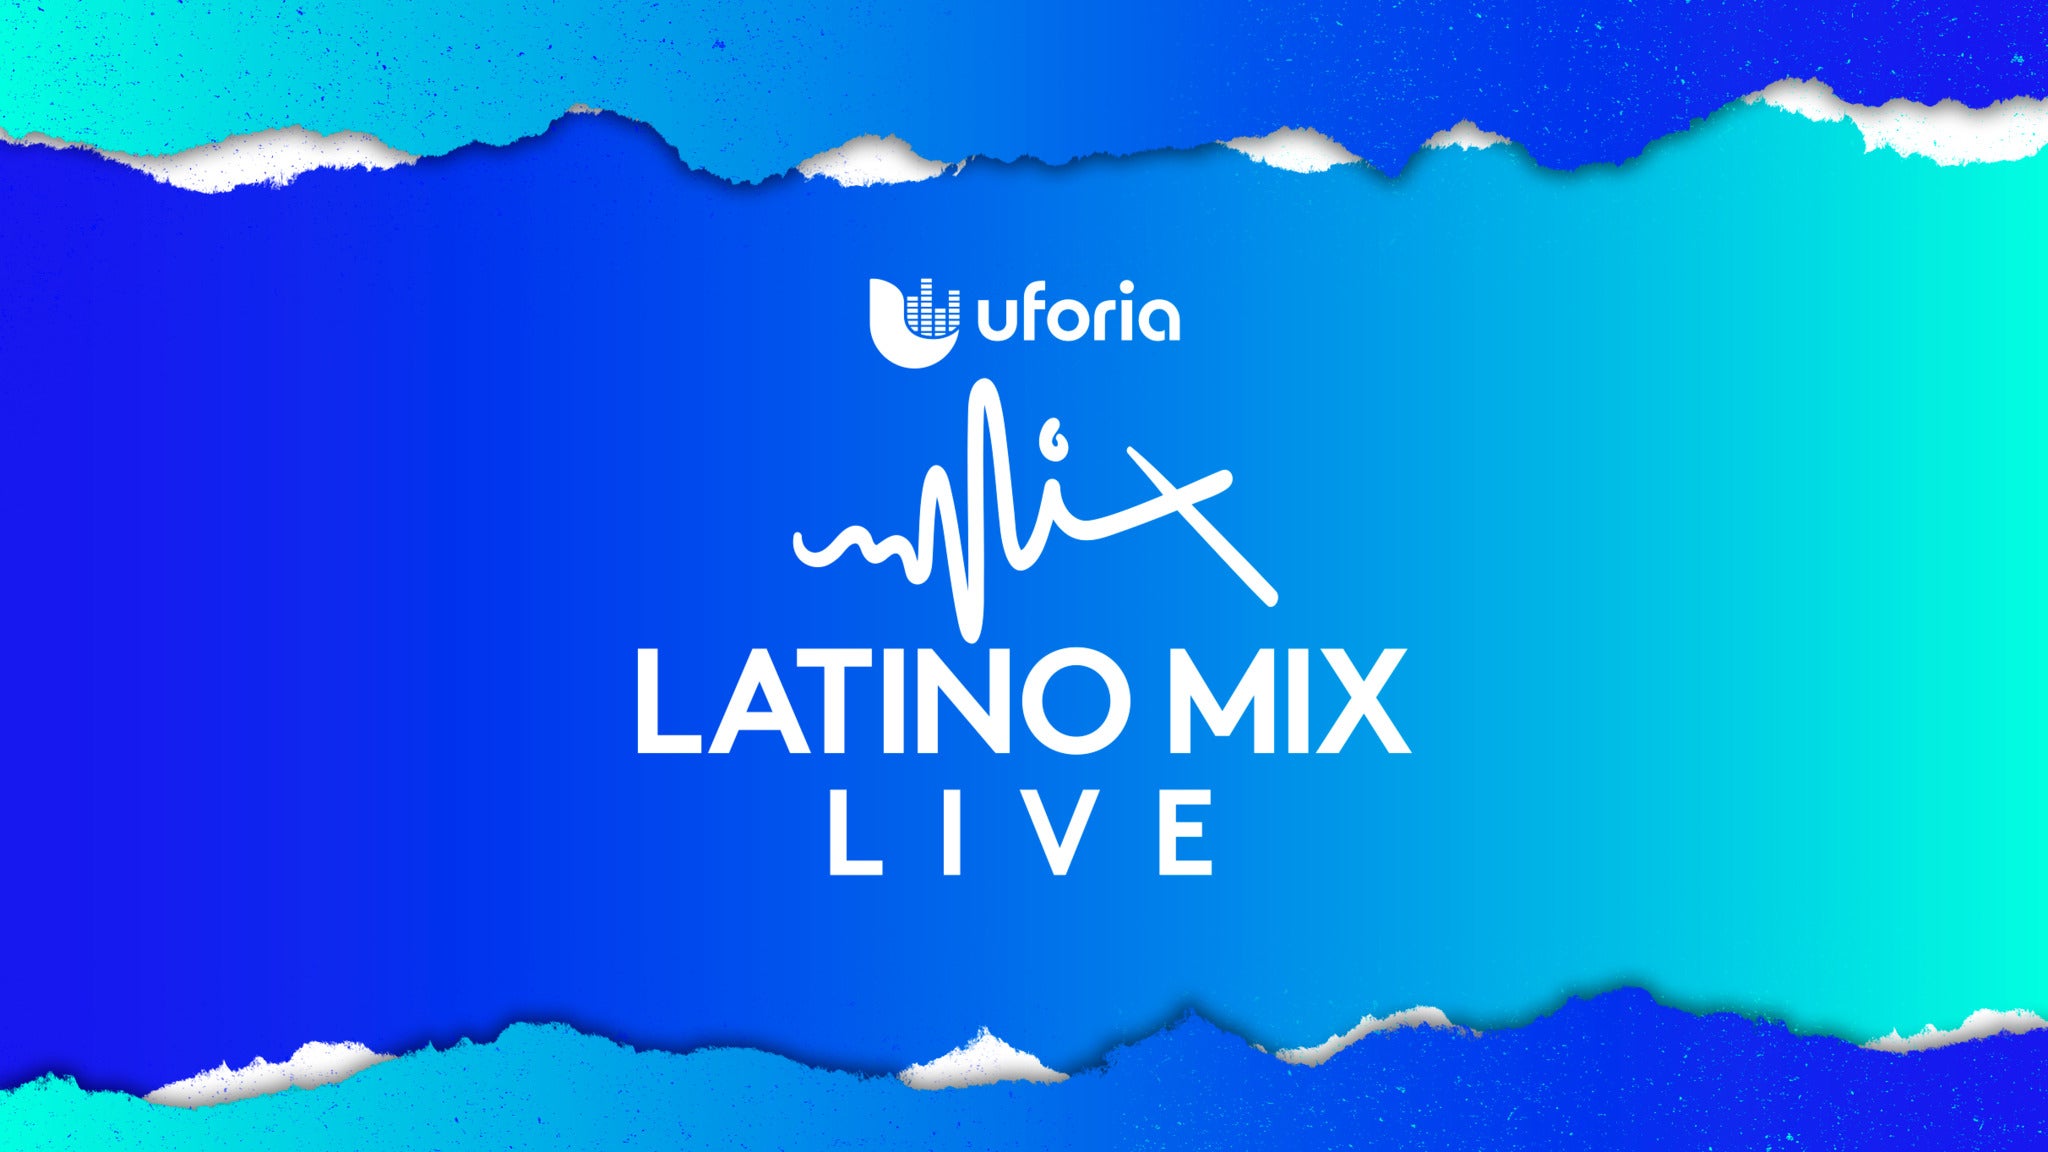 Uforia Latino Mix Live tickets, presale info, merch and more BoxOfficeHero